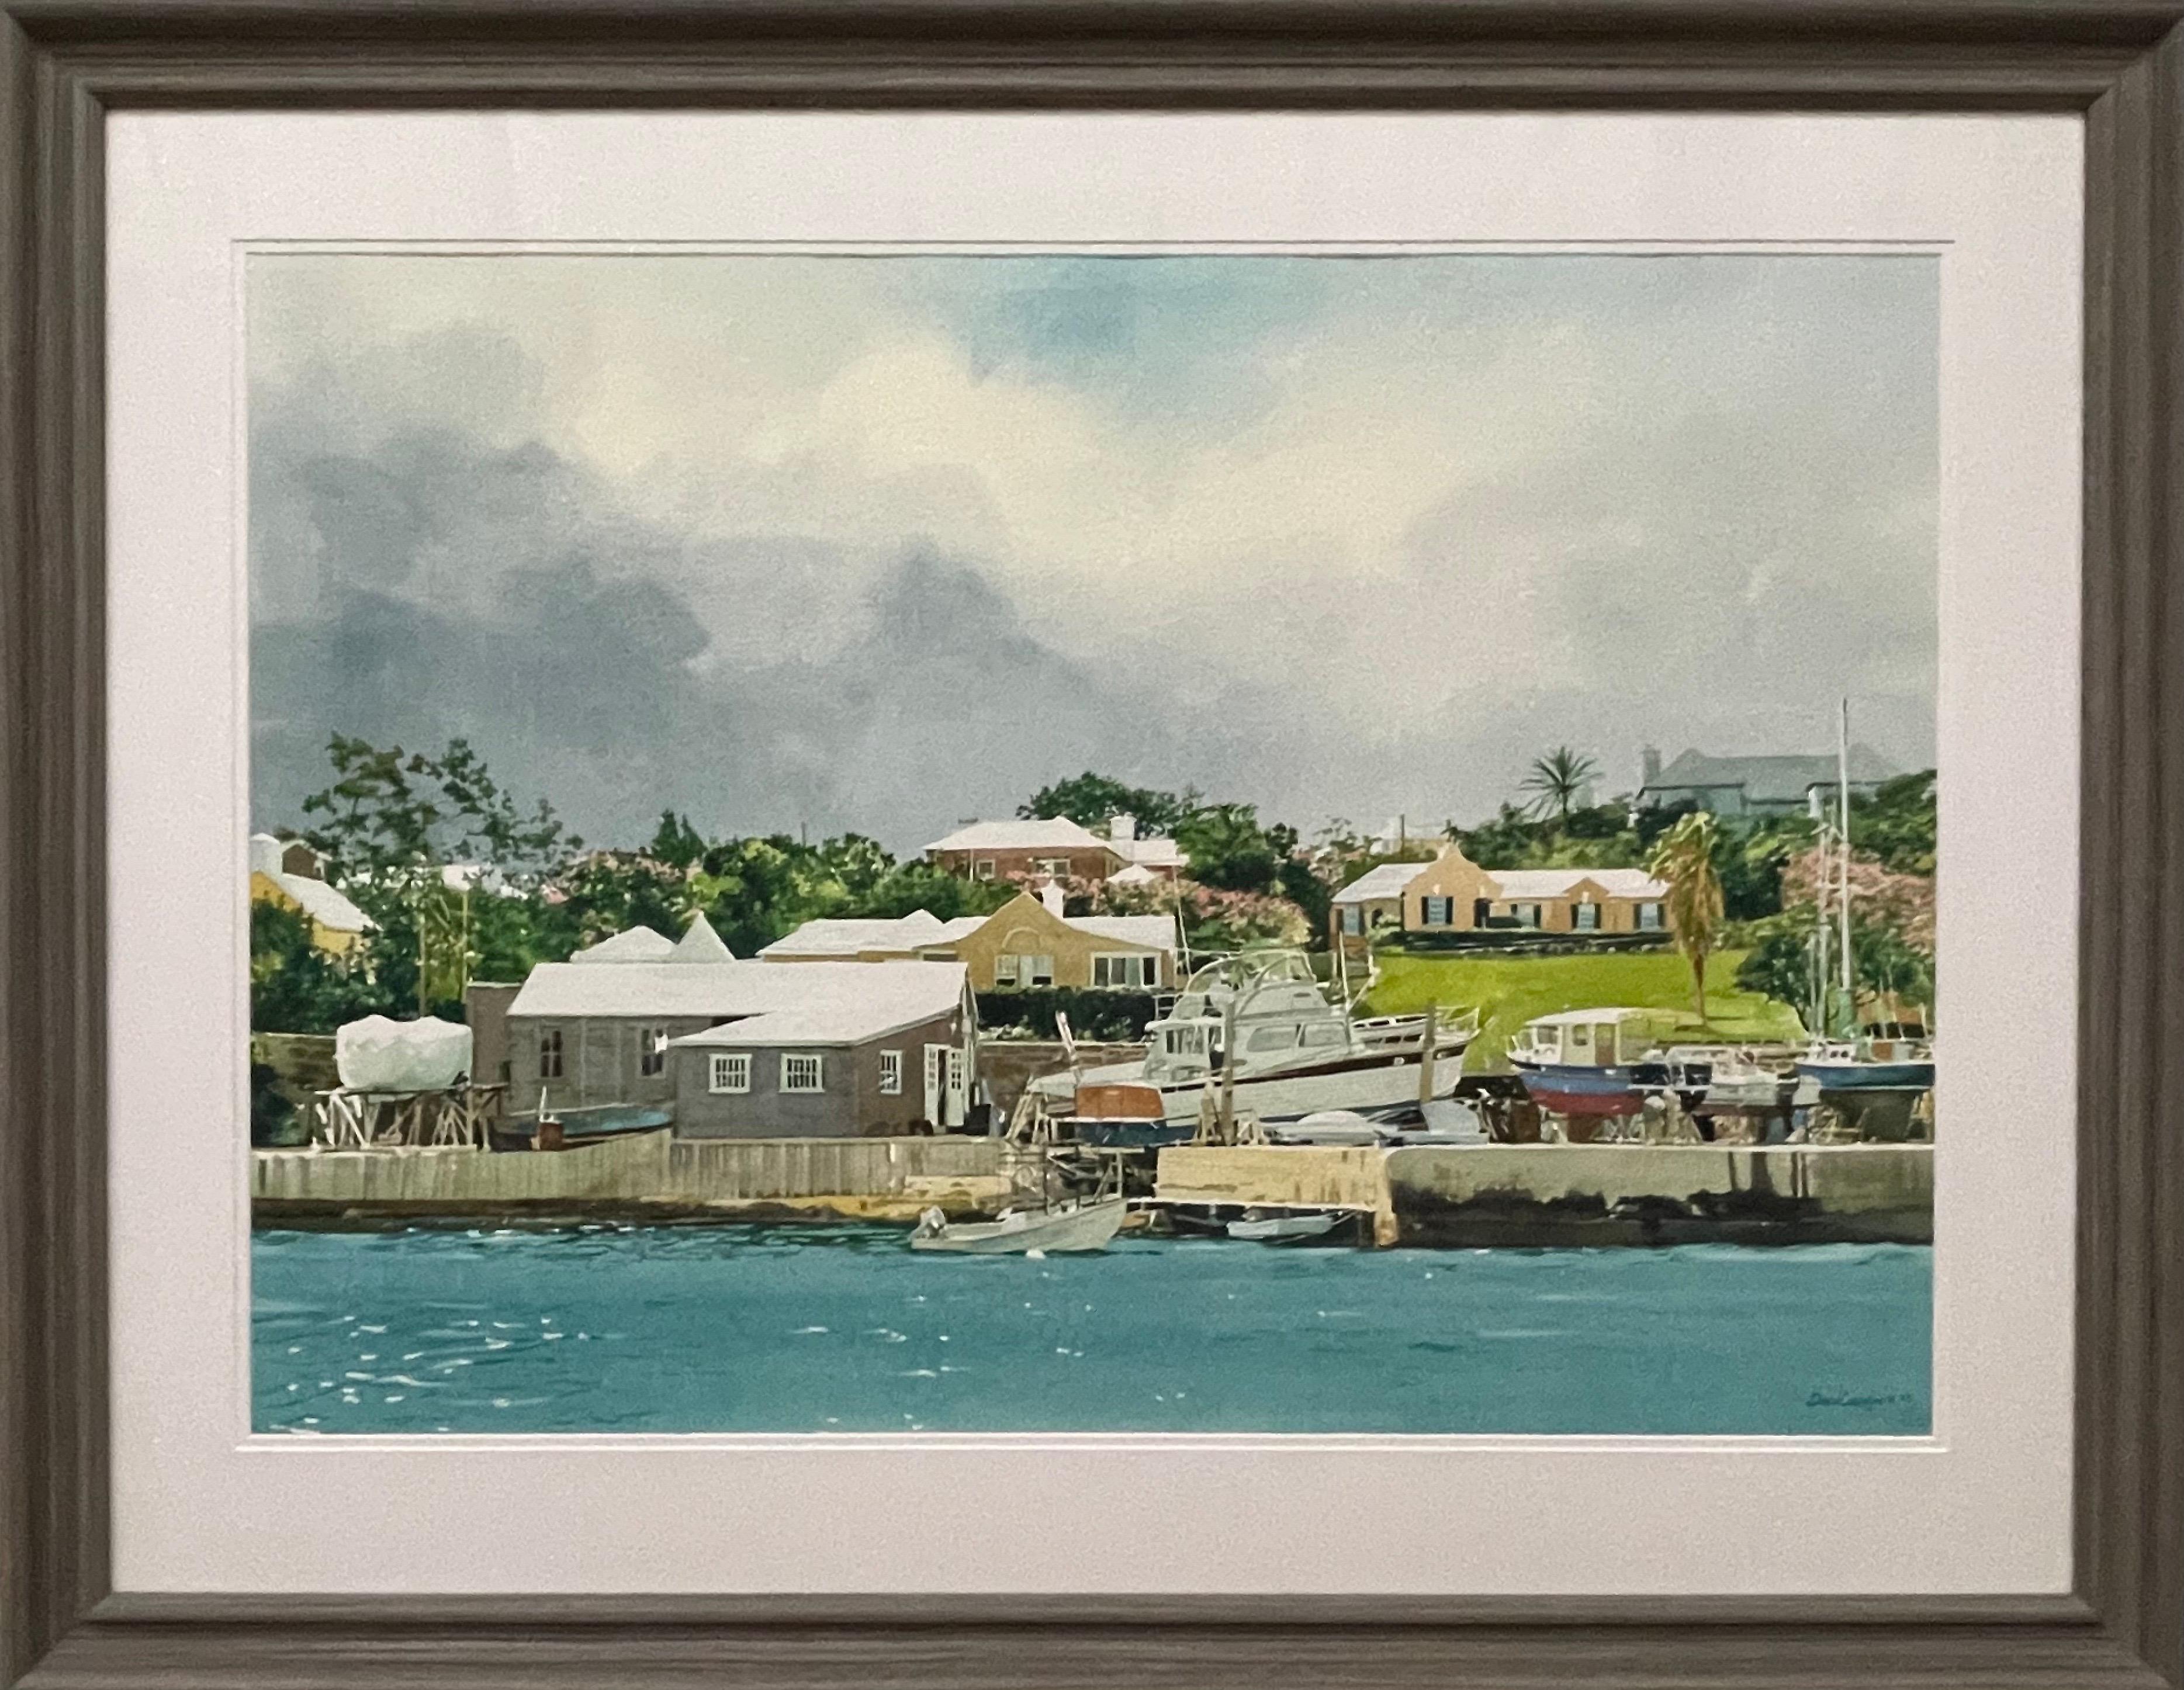 Landscape Art David Coolidge - Grande aquarelle de bateaux de satisfaction Moored on the River en Floride par un artiste américain